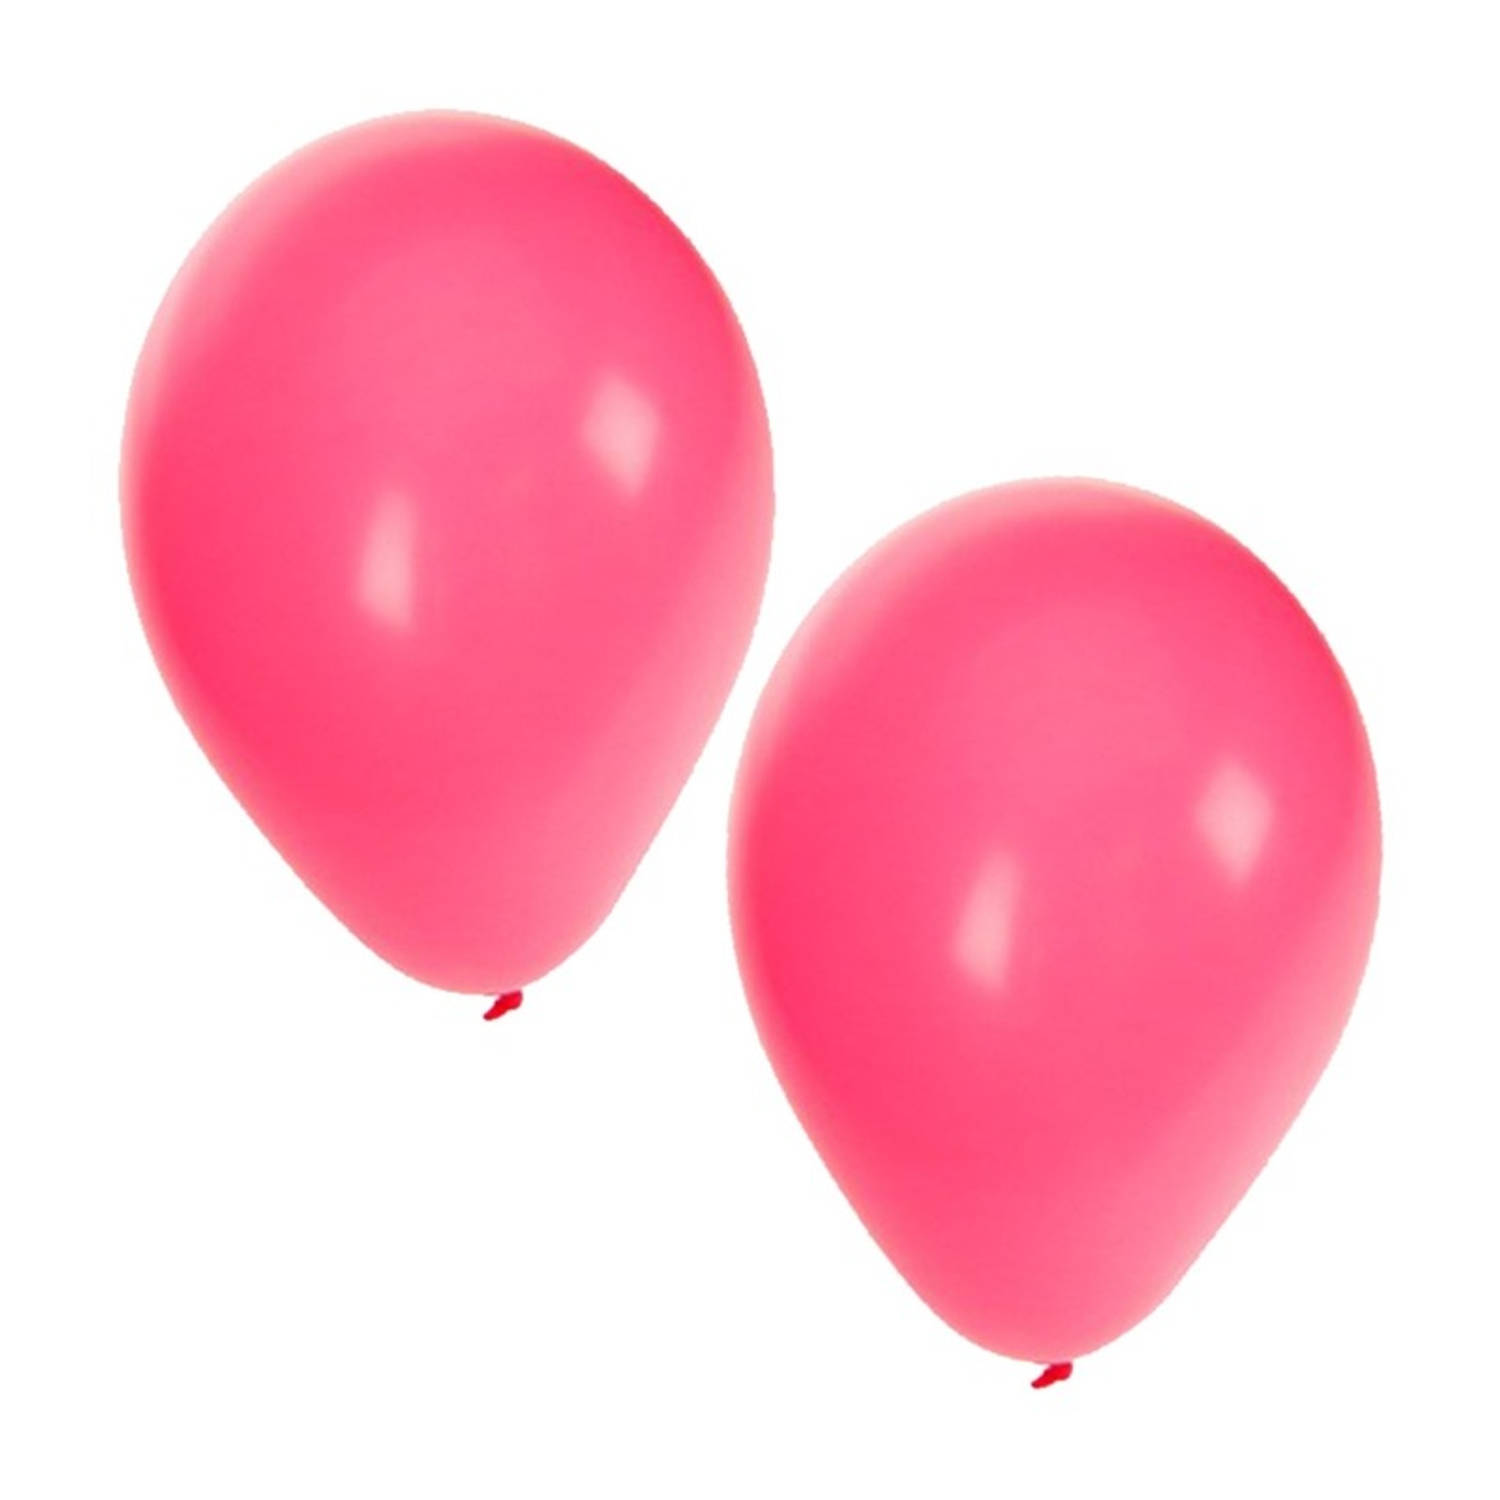 Ik denk dat ik ziek ben Bijwonen gemeenschap Roze ballonnen 100 stuks - Ballonnen | Blokker